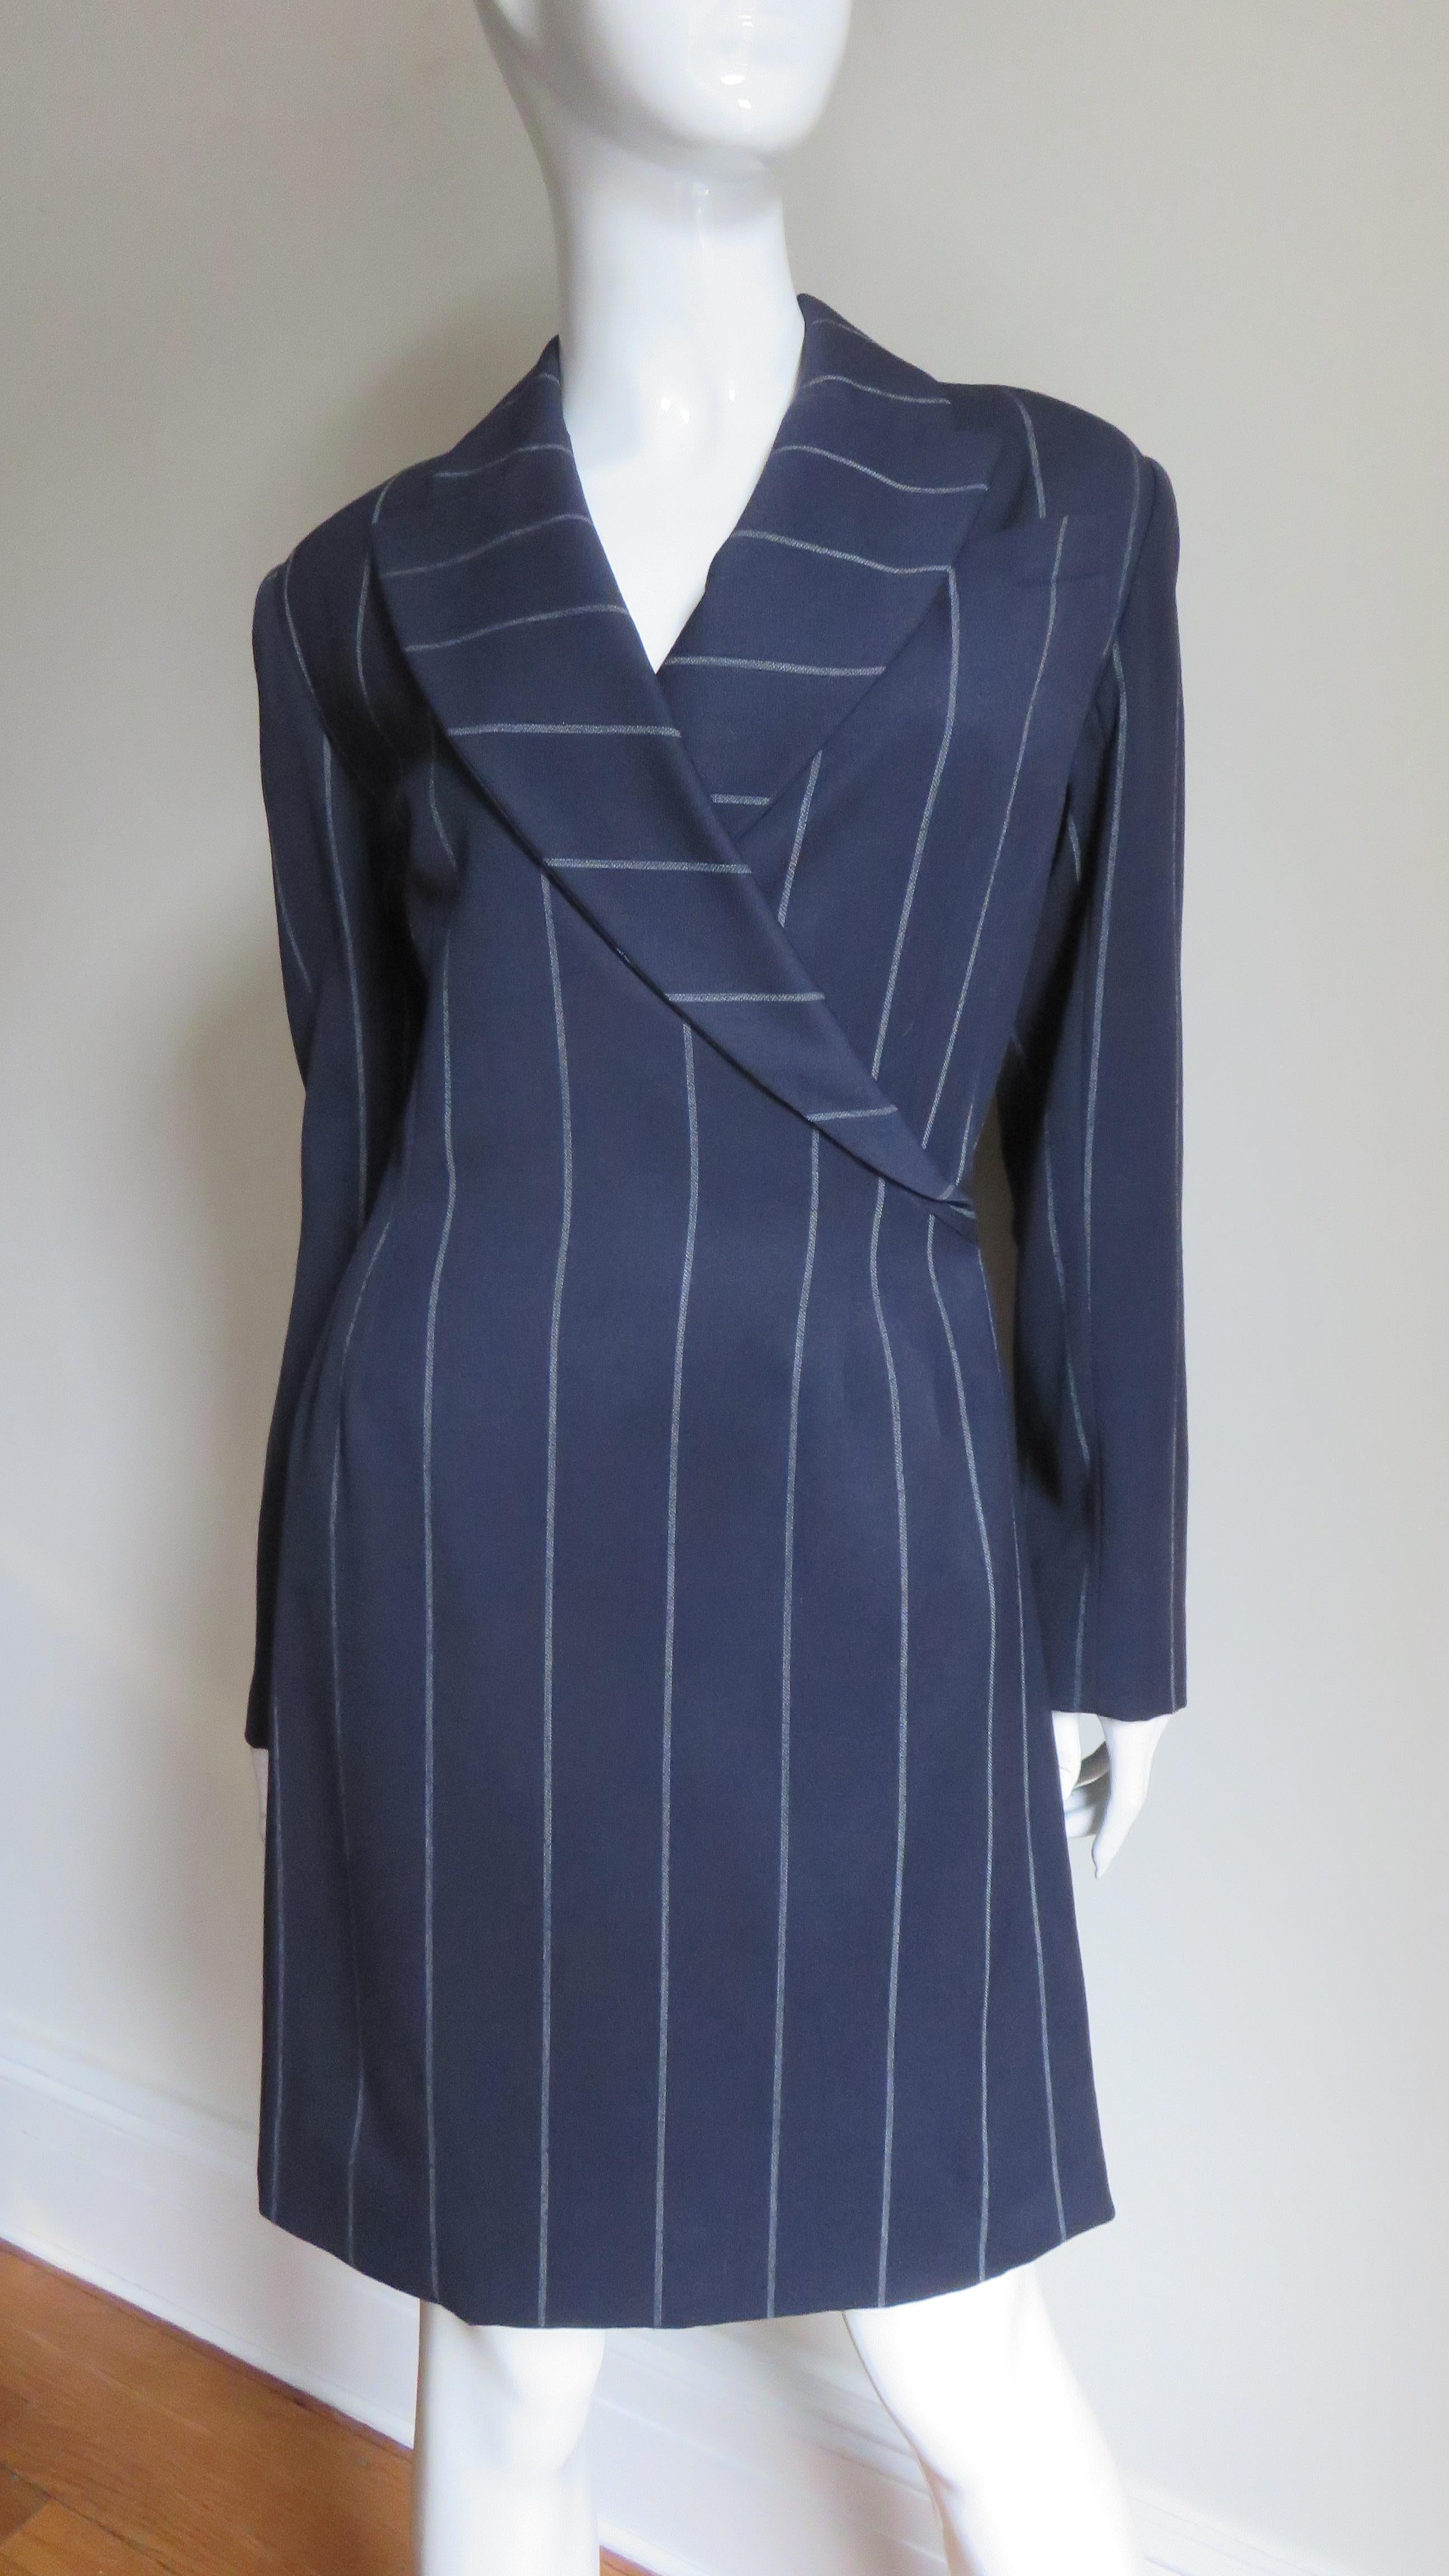 Ein tolles marineblau gestreiftes Kleid aus Wolle von Herve Leger.  Das halb taillierte Kleid im Wickel-Stil hat eine Brusttasche, ein spitzes Revers und einen doppelten Schlitz über einem einfachen Schlitz im hinteren Rockteil, der für einen